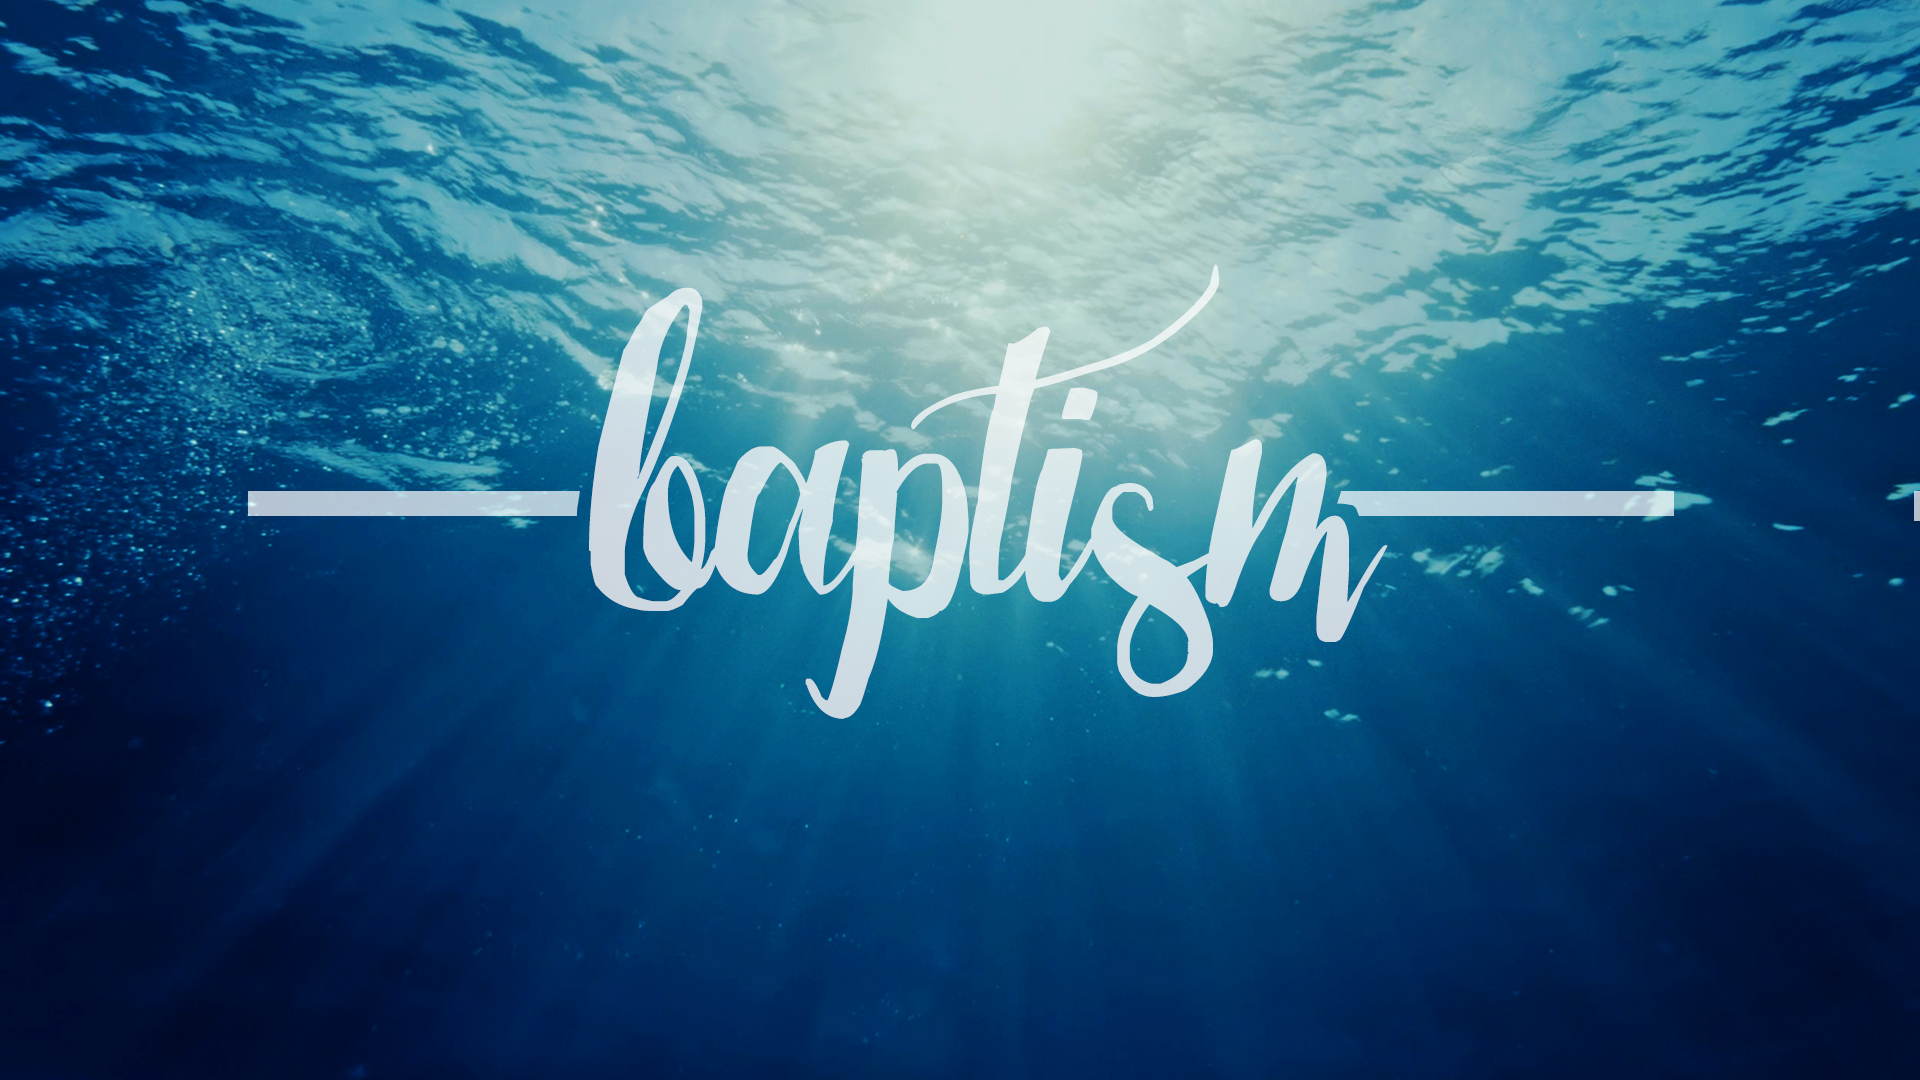 baptism plain image